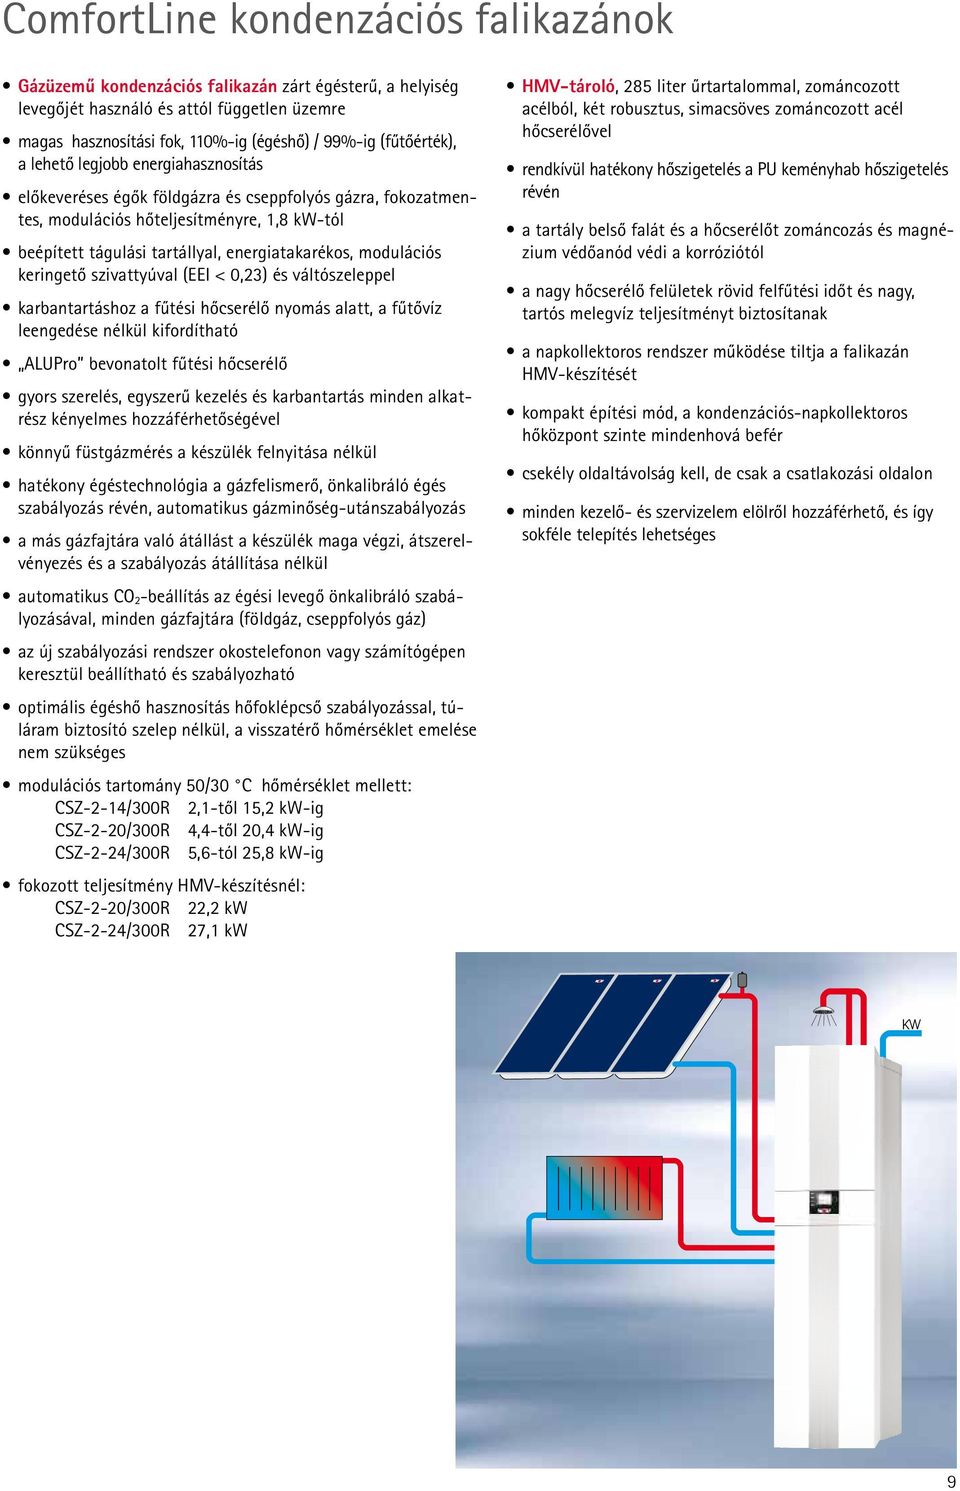 ComfortLine kondenzációs falikazánok - PDF Ingyenes letöltés